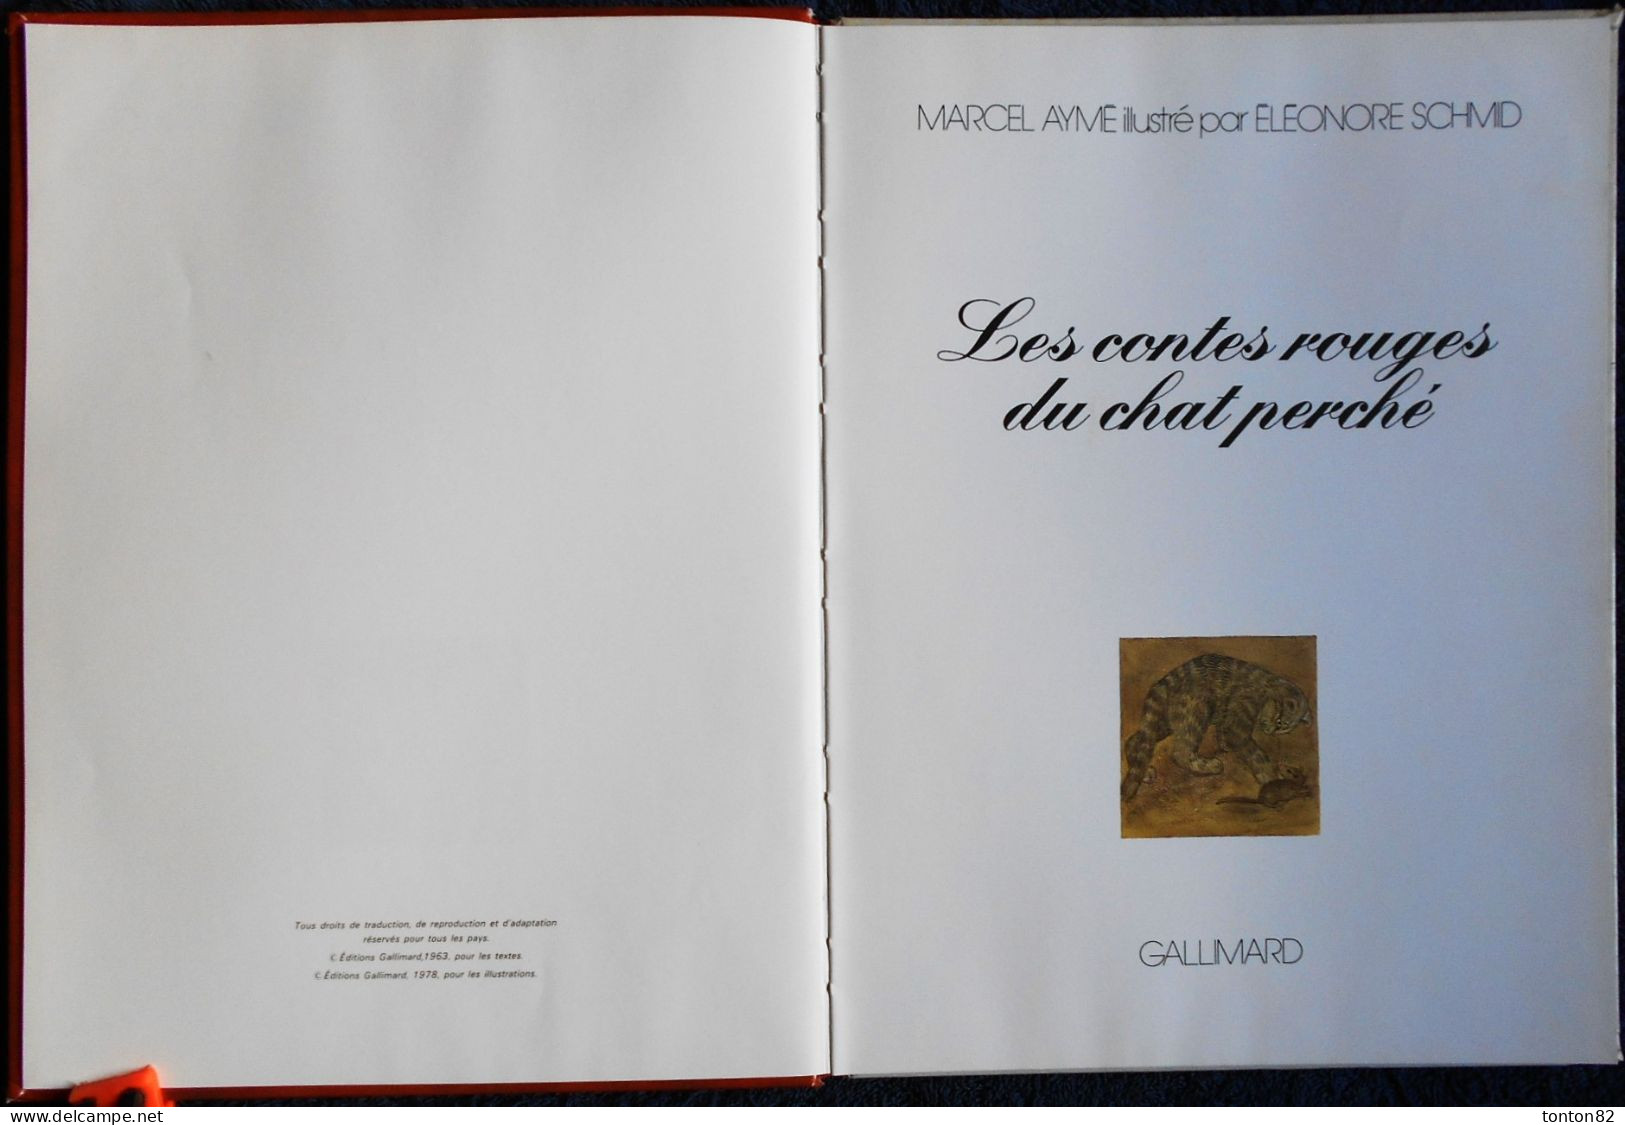 Marcel Aymé - Les Contes Contes Rouges Du Chat Perché - Illustré Par Éléonore Schmid - Gallimard - ( 1978 ) . - Biblioteca Verde